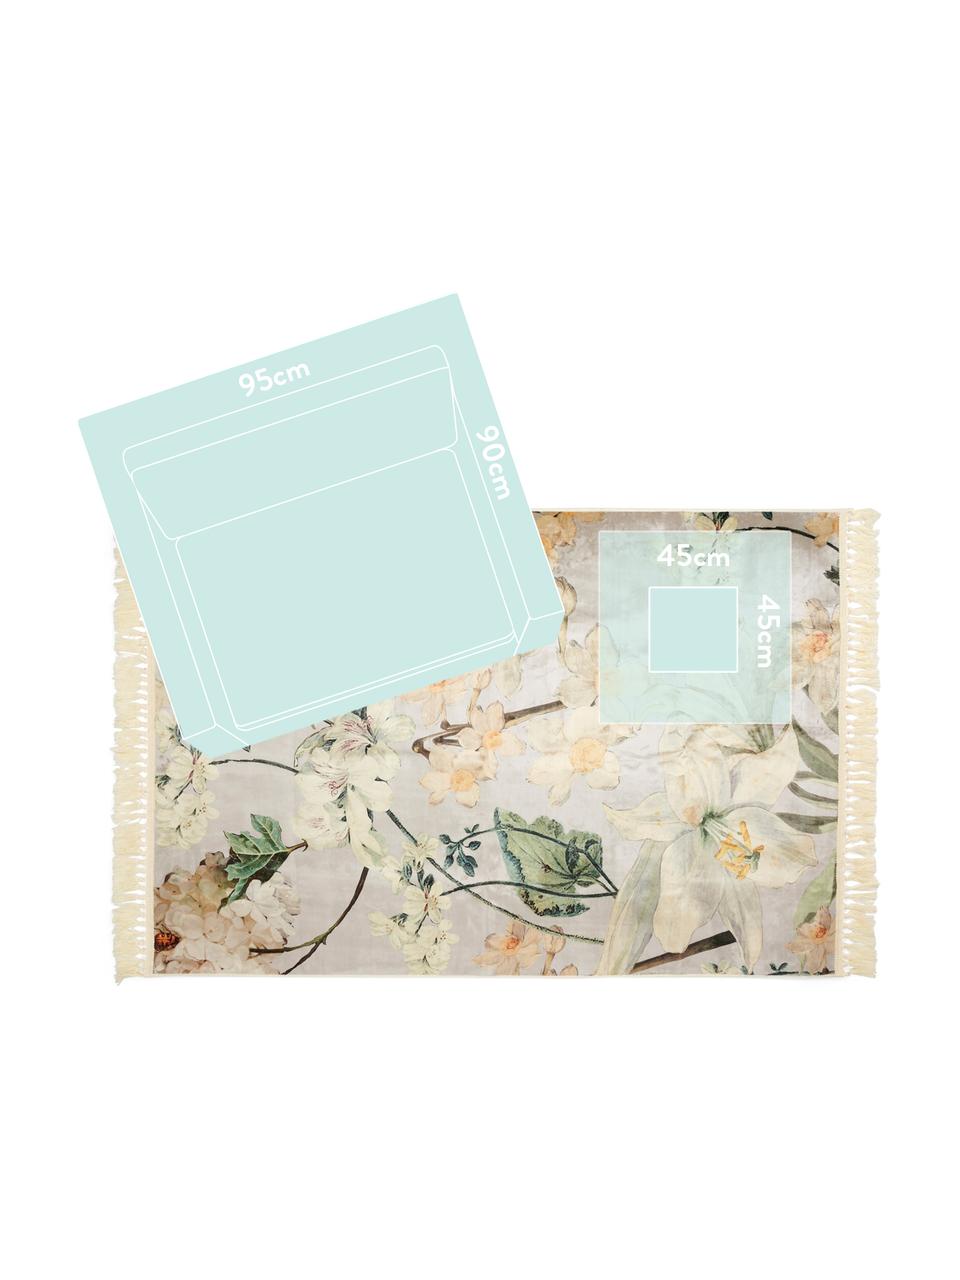 Teppich Rosalee mit Blumenmuster, 60% Polyester, 30% thermoplastisches Polyurethan, 10% Baumwolle, Hellgrau, Mehrfarbig, B 180 x L 240 cm (Größe M)